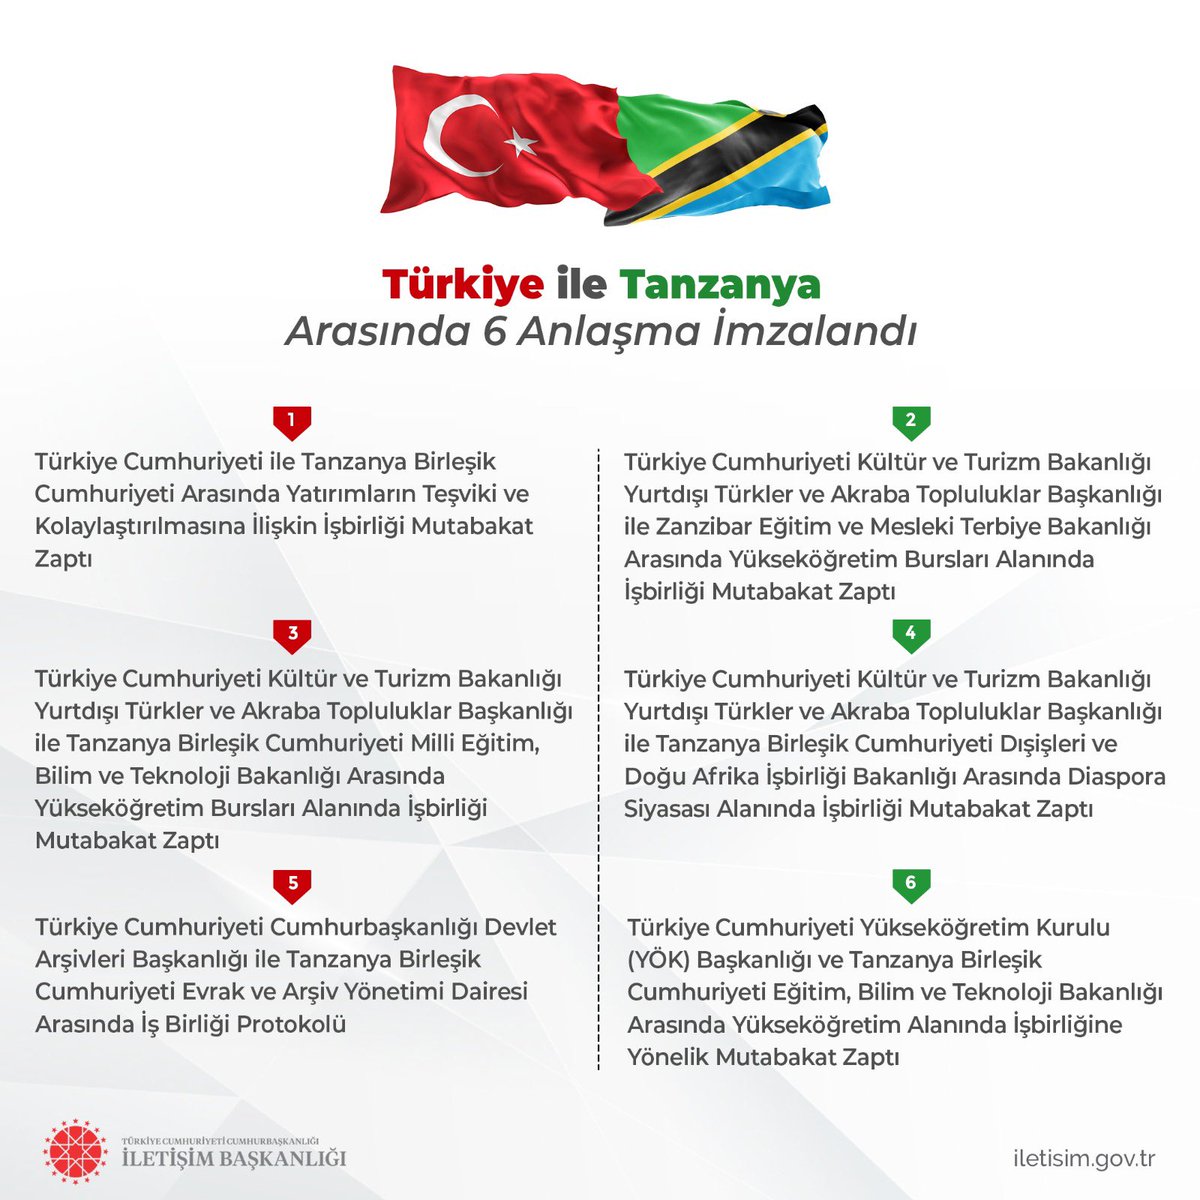 Türkiye ile Tanzanya arasında 6 anlaşma imzalandı.